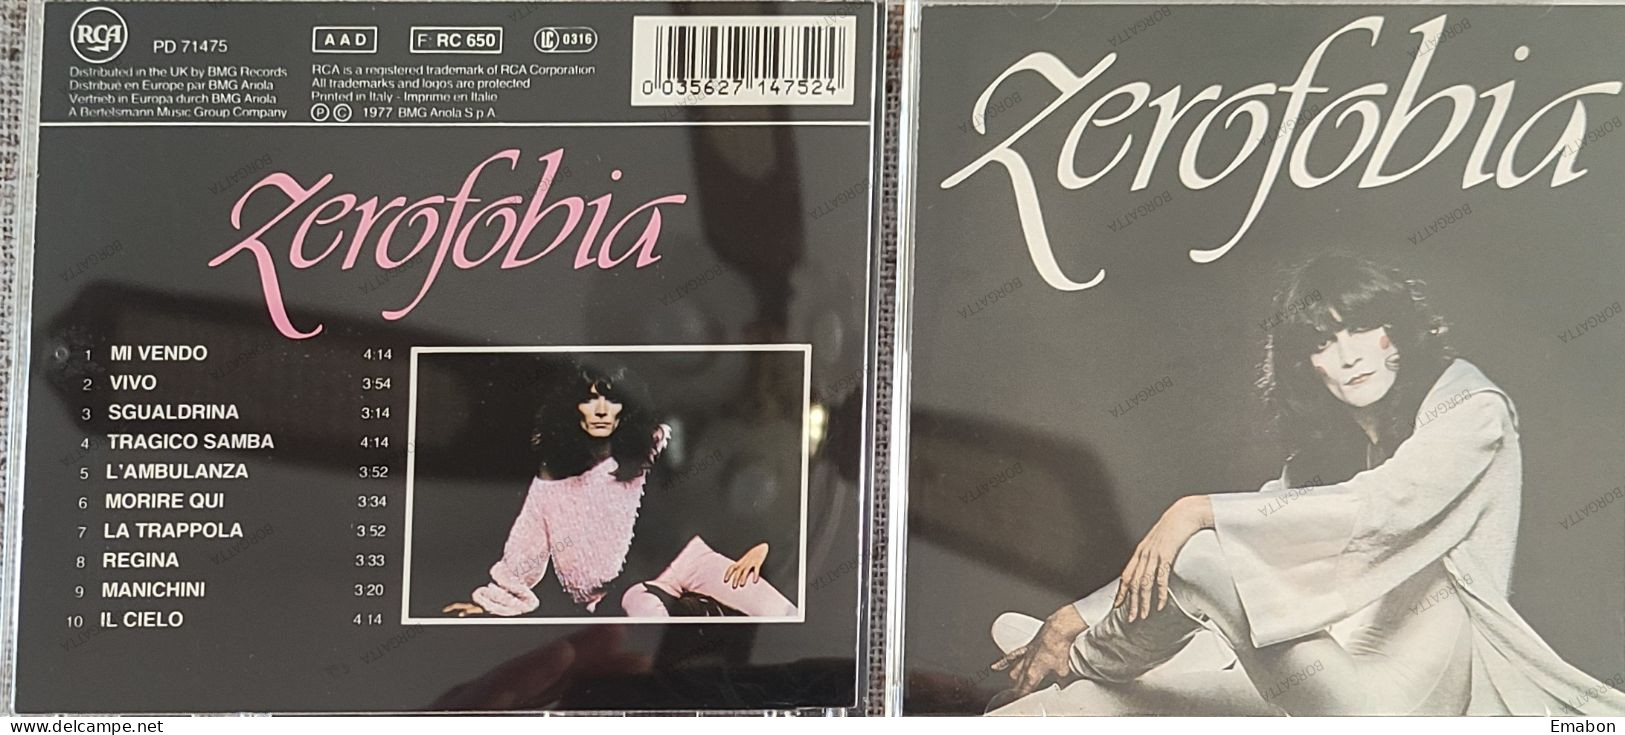 BORGATTA - ITALIANA  - Cd  RENATO ZERO - ZEROFOBIA - RCA ITALIANA 1991 - USATO In Buono Stato - Other - Italian Music